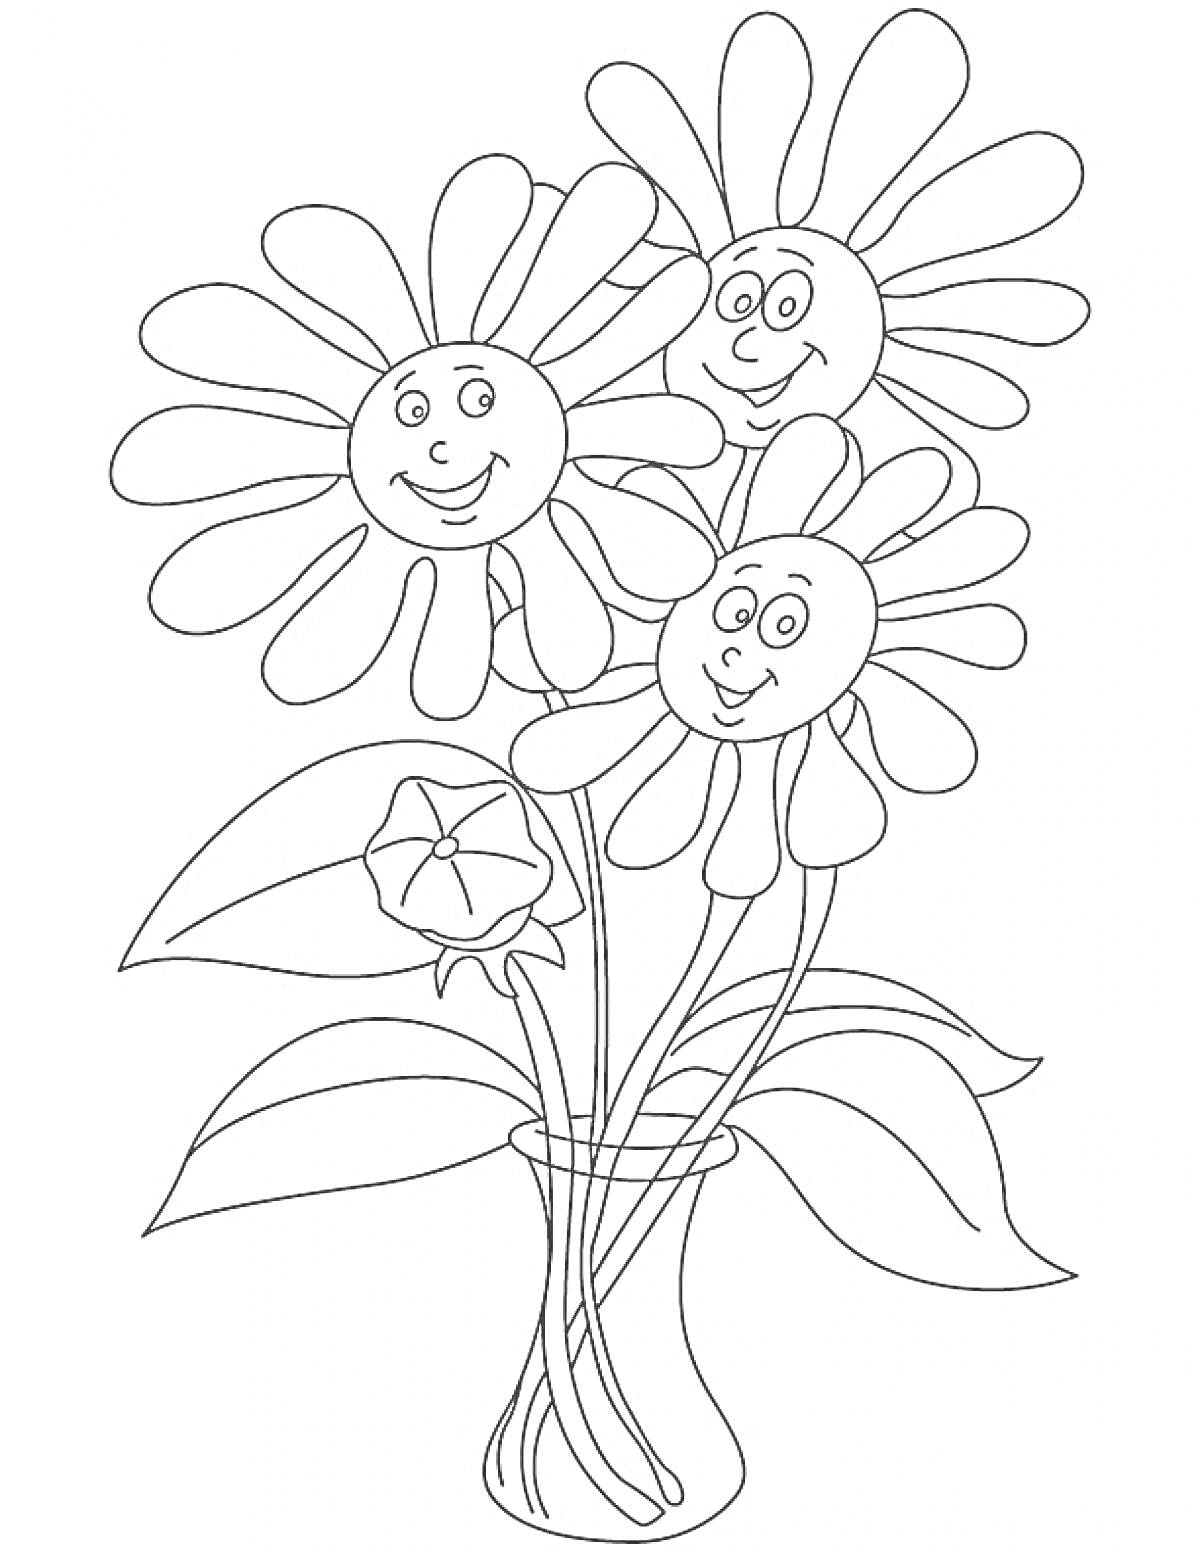 Раскраска Три улыбающихся цветка в вазе с листьями и нераскрывшимся бутоном